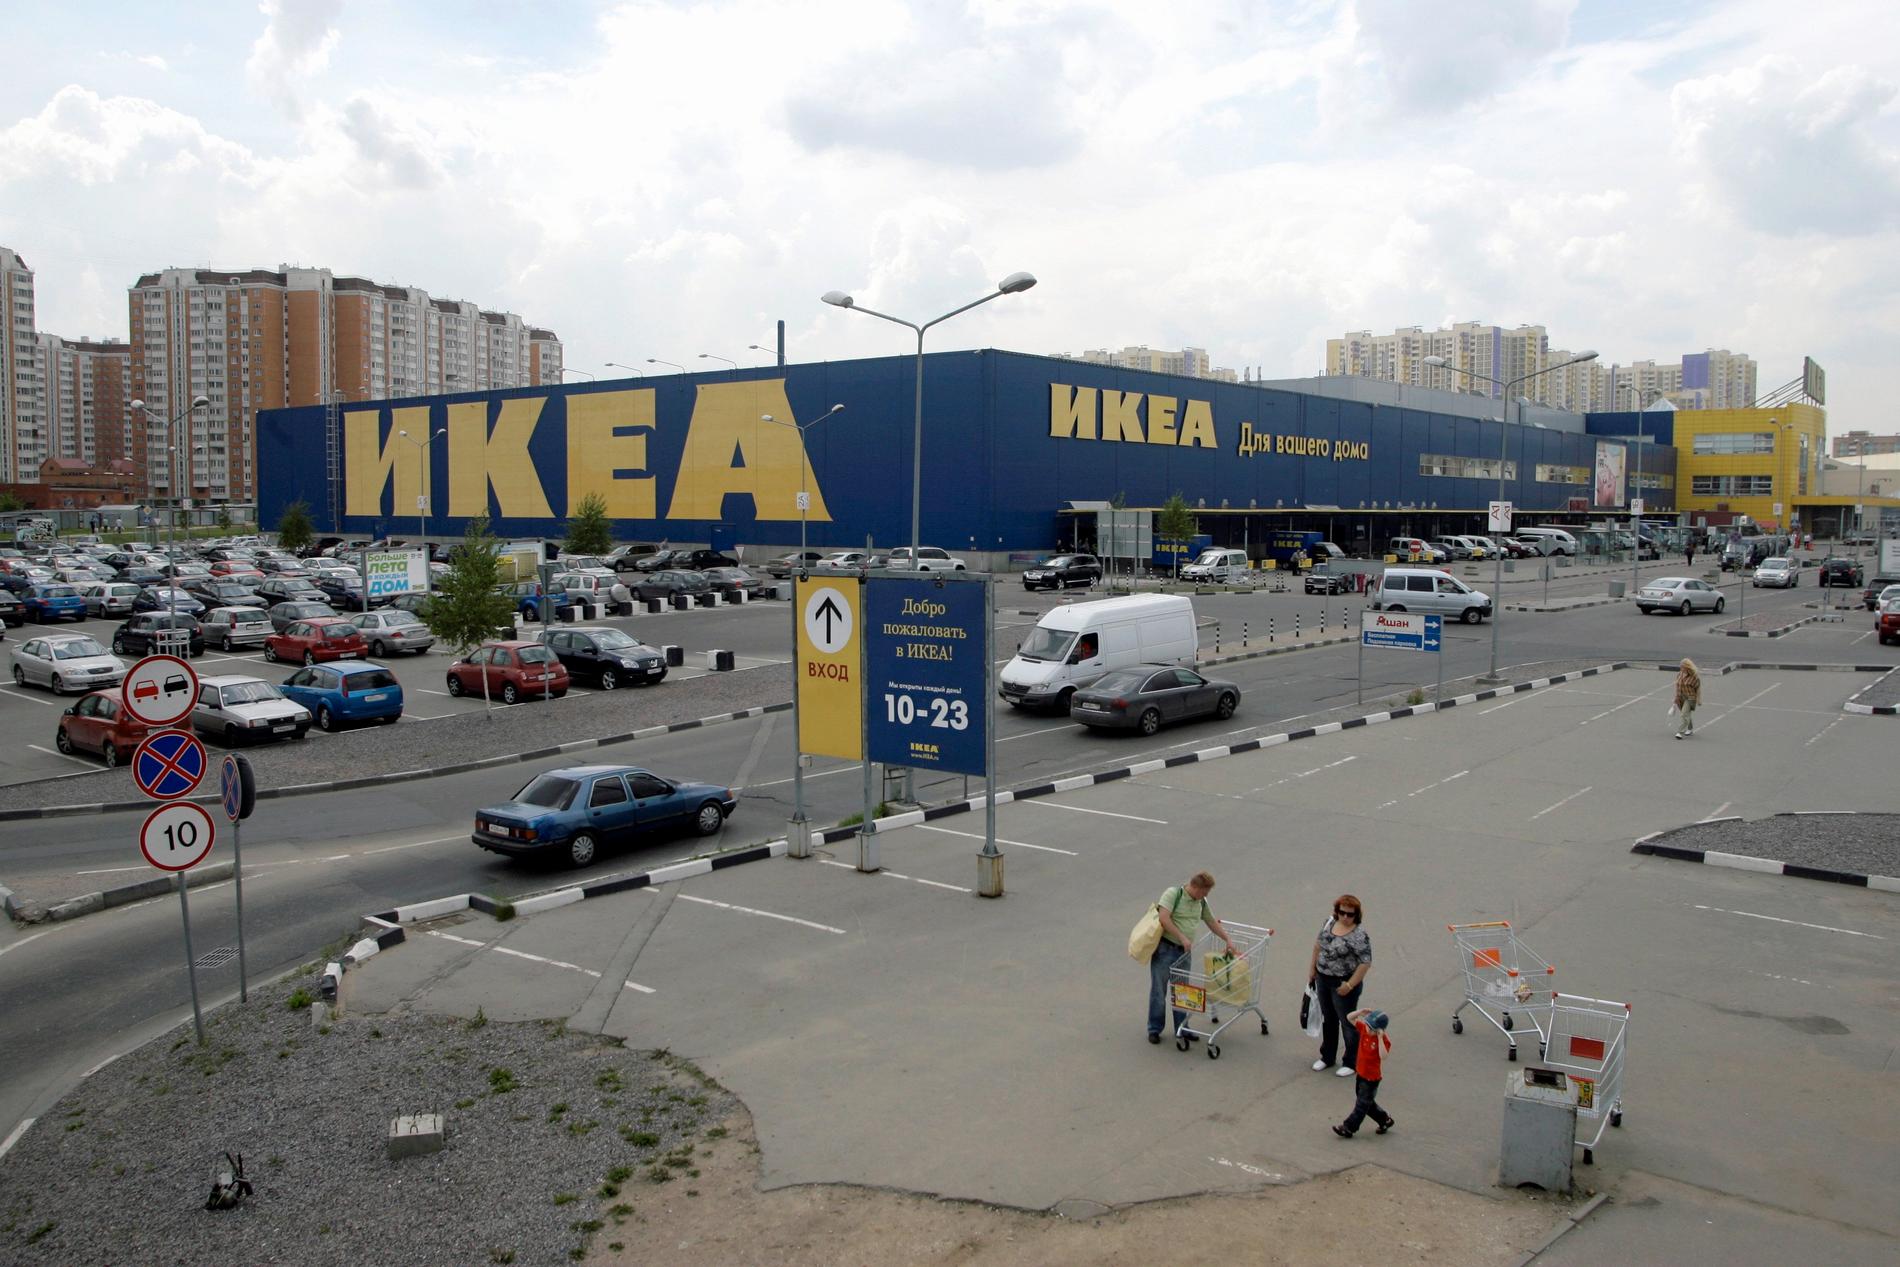 Ikeas varuhus i Moskva.